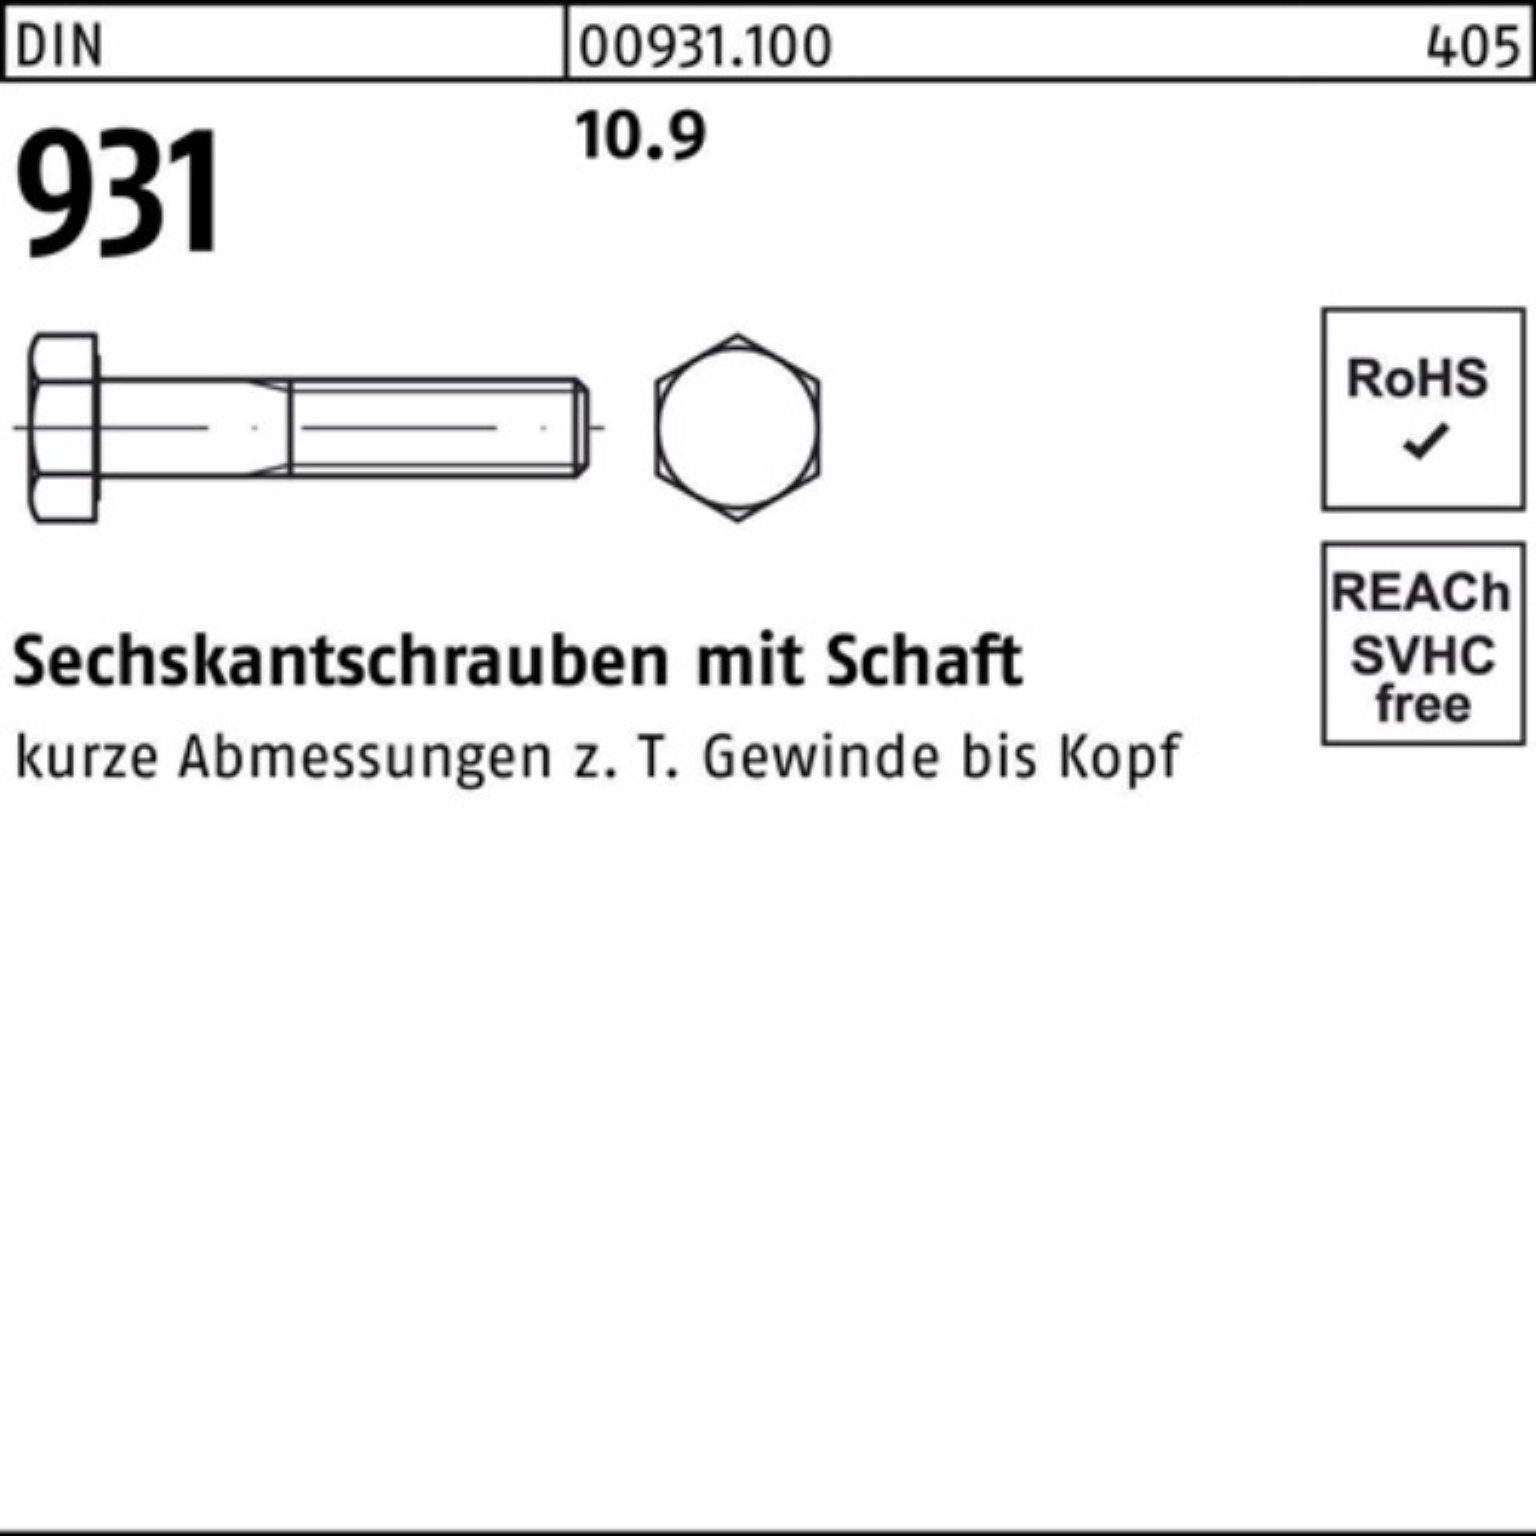 Reyher Sechskantschraube Schaft 100er 1 Sechskantschraube 931 10.9 DIN Stück DIN Pack 360 M16x